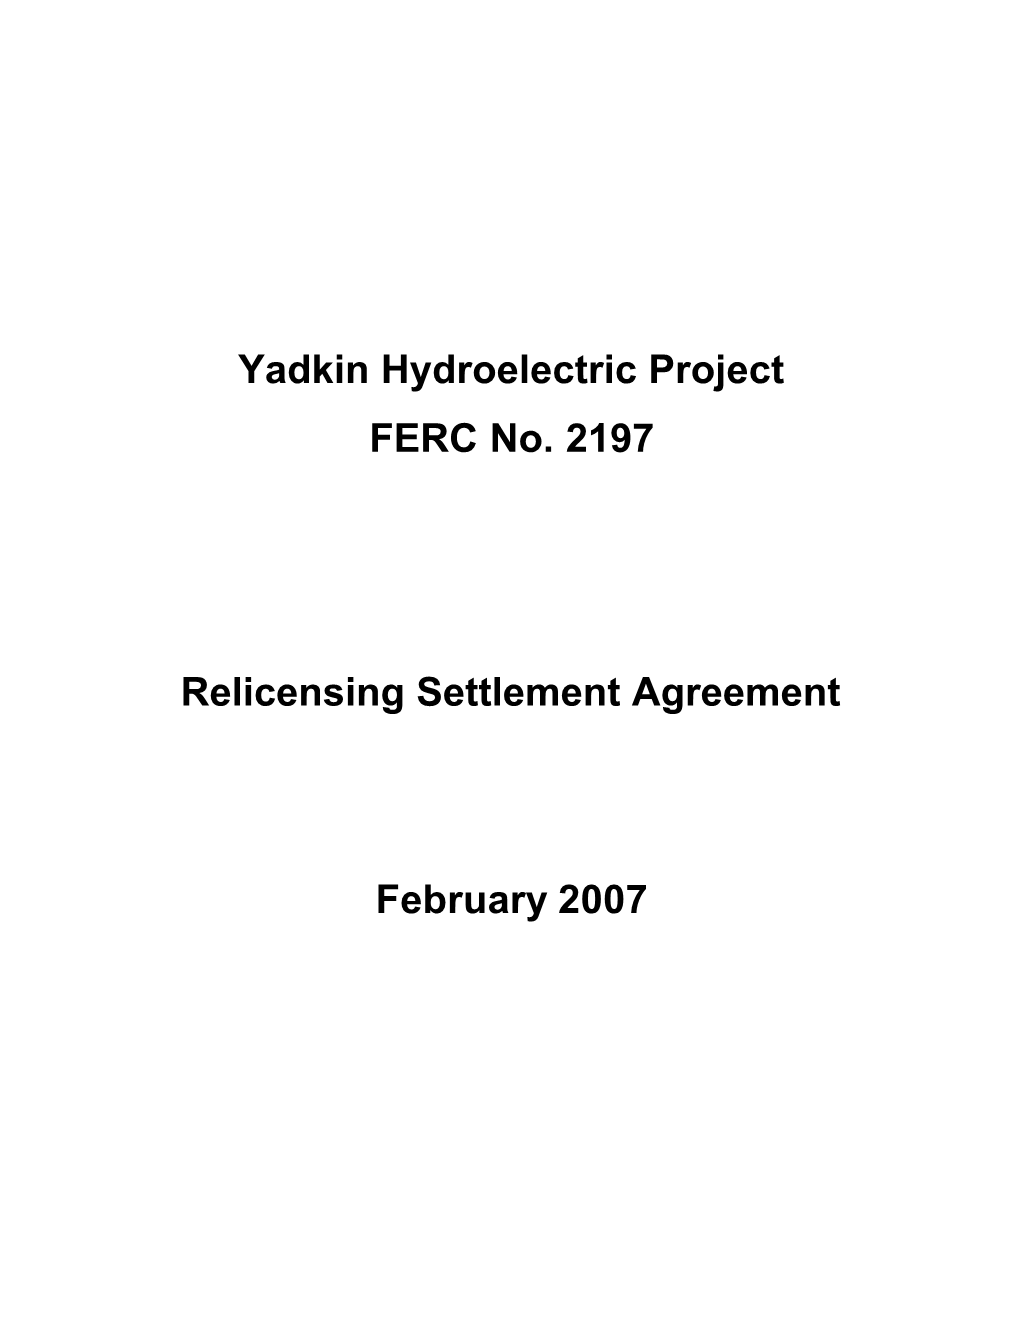 Yadkin Hydroelectric Project FERC No. 2197 Relicensing Settlement